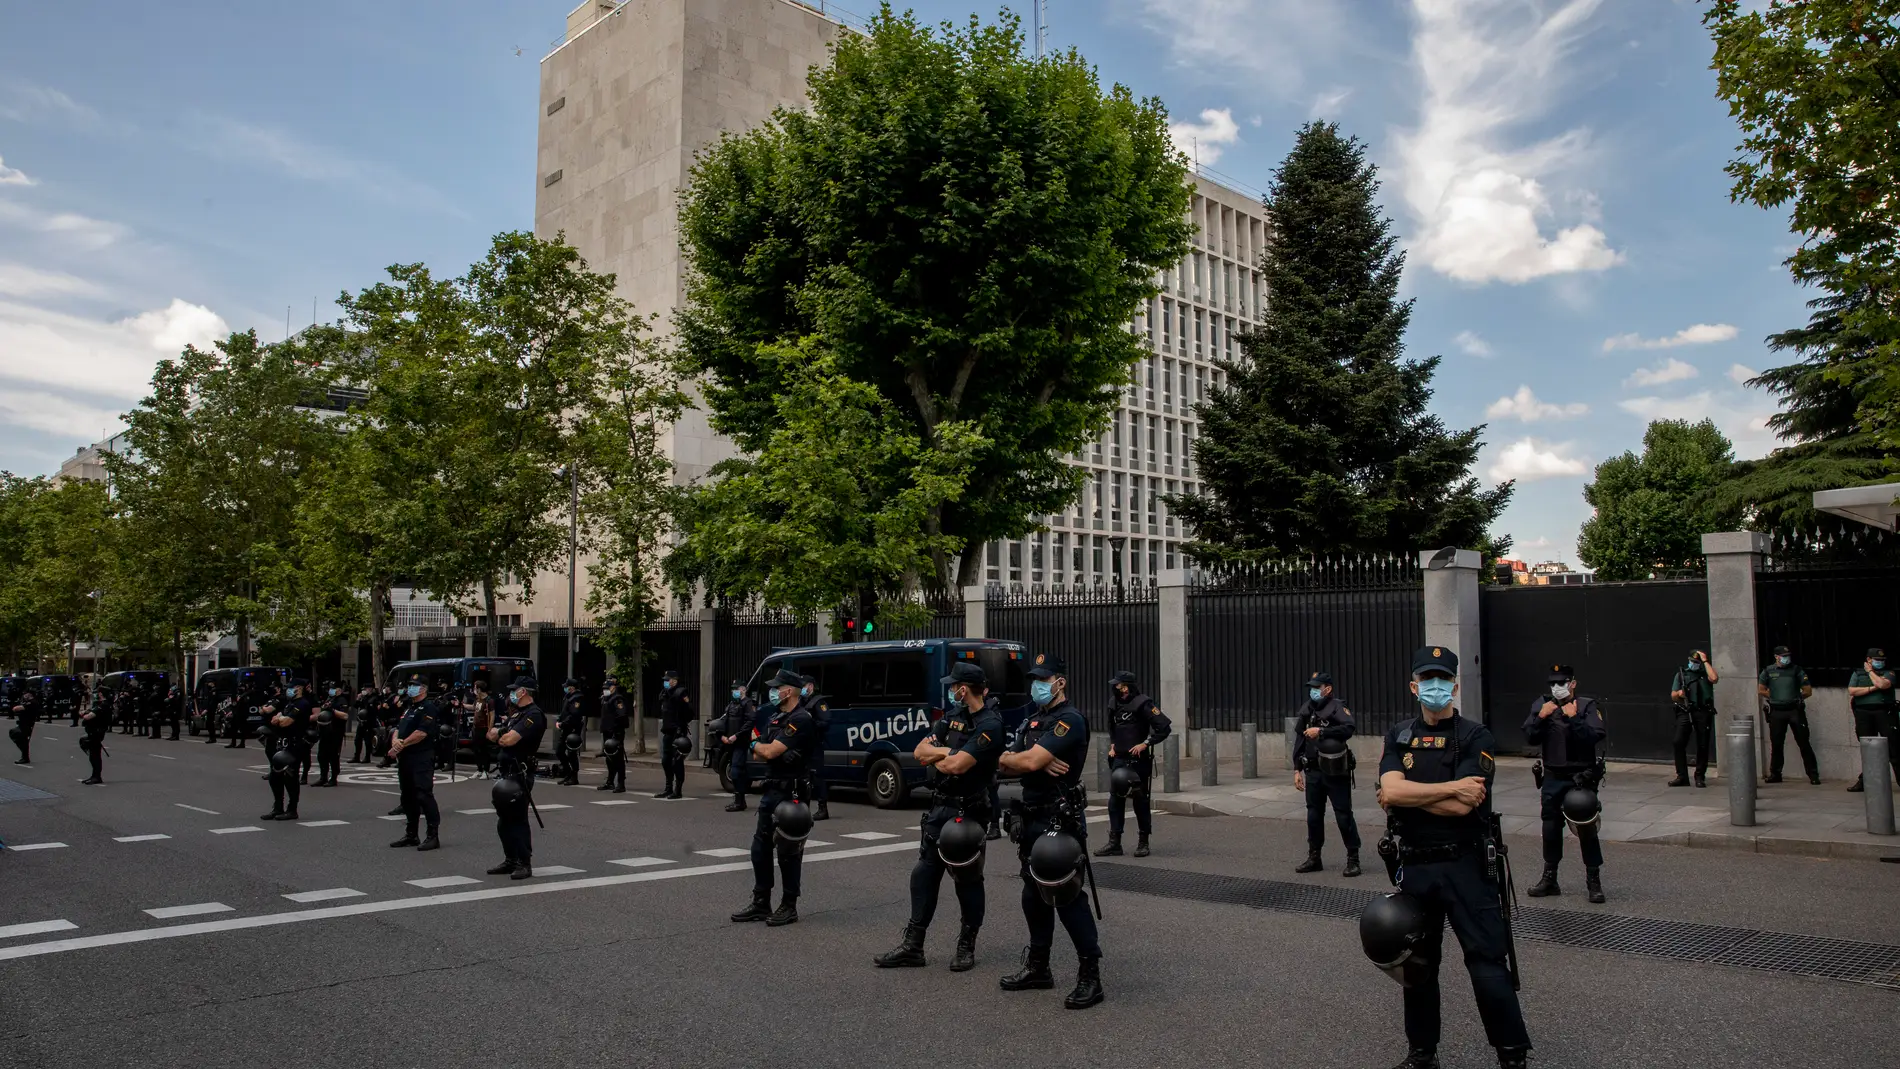 Oleada de cartas bomba: un sexto sobre con explosivos llega a la embajada de EEUU en Madrid